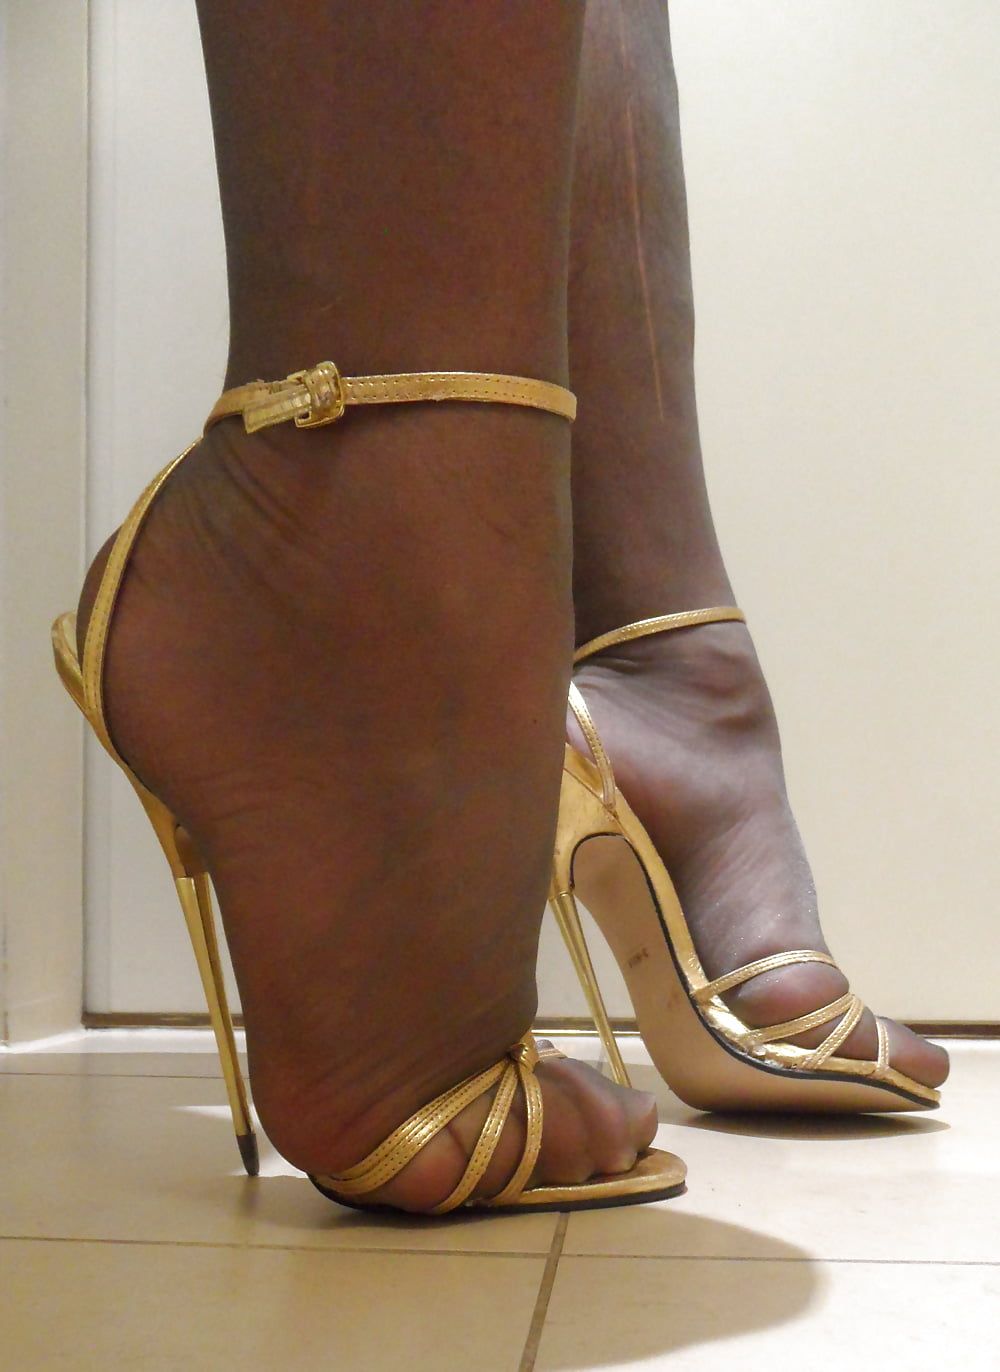 my wife's golden sandals #5